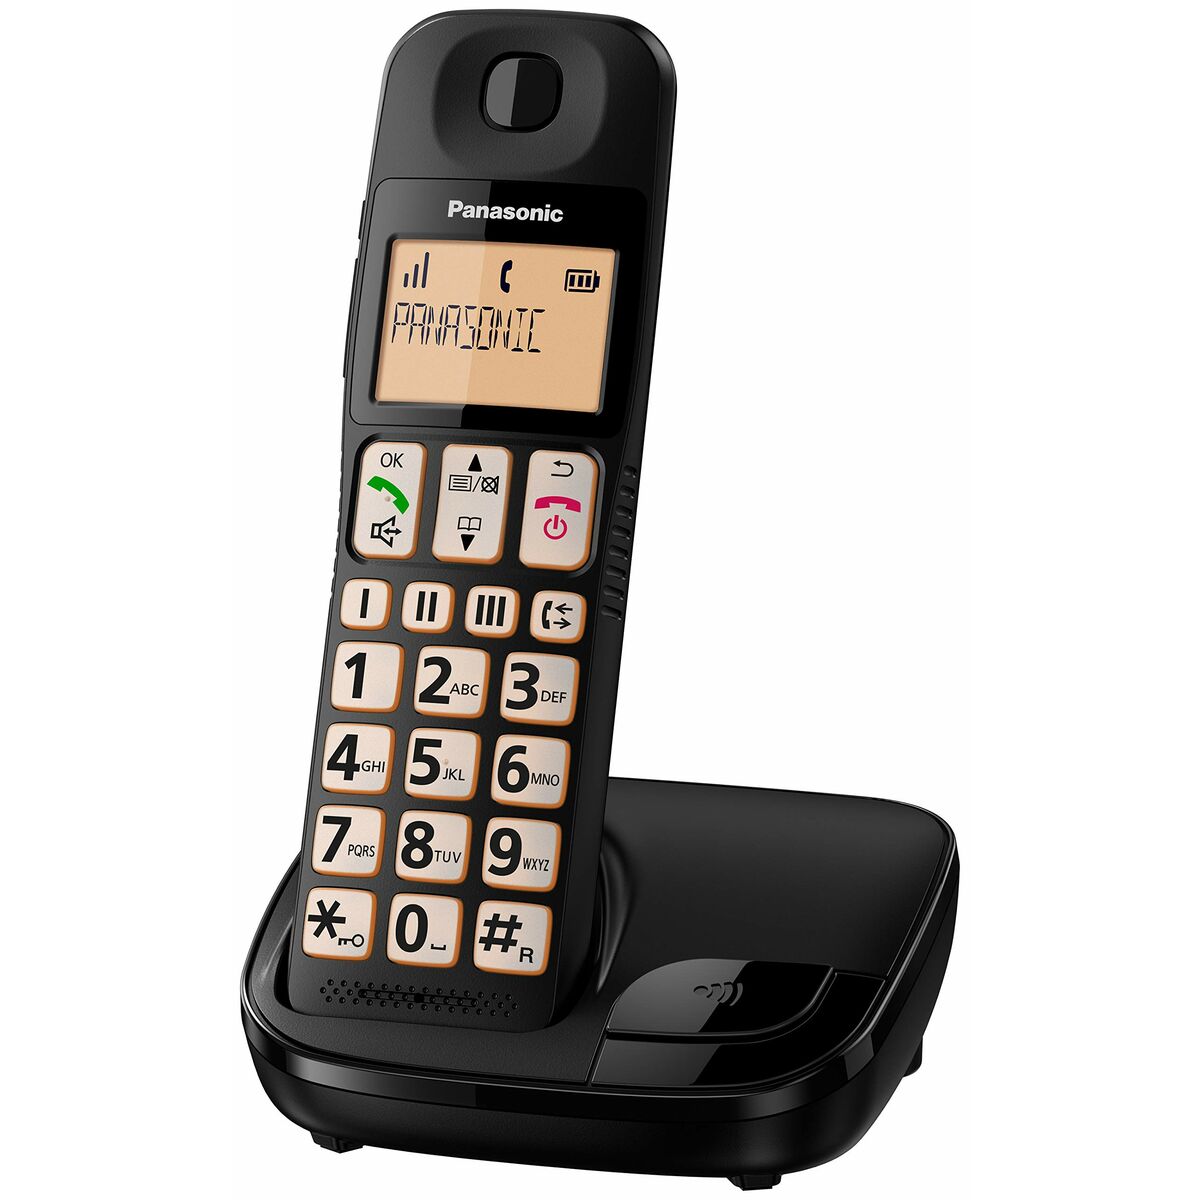 Wireless Phone Panasonic Black (Refurbished B)